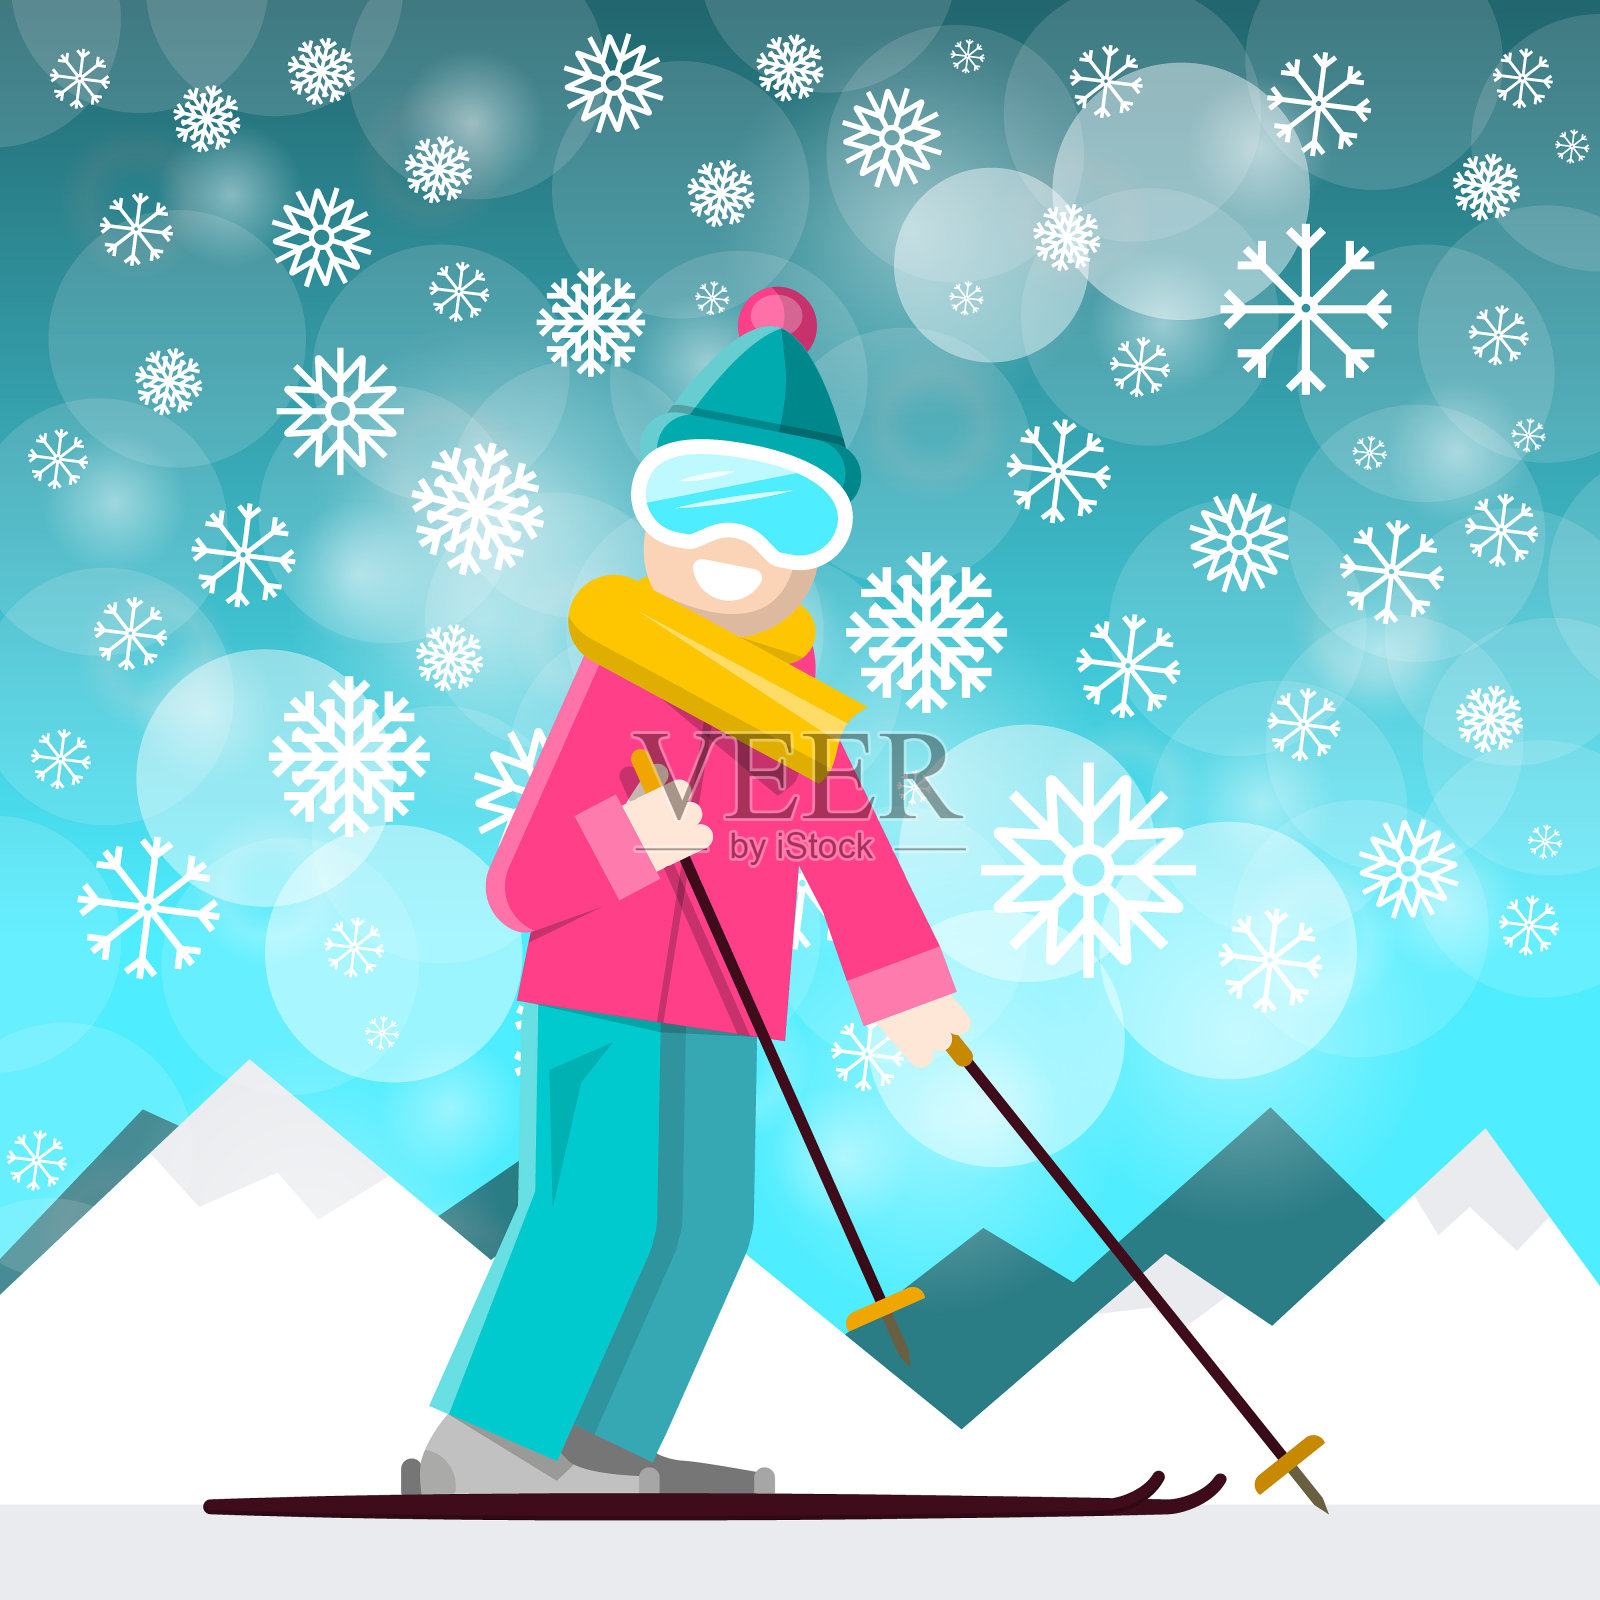 《Backraund上的山脉滑雪者》插画图片素材